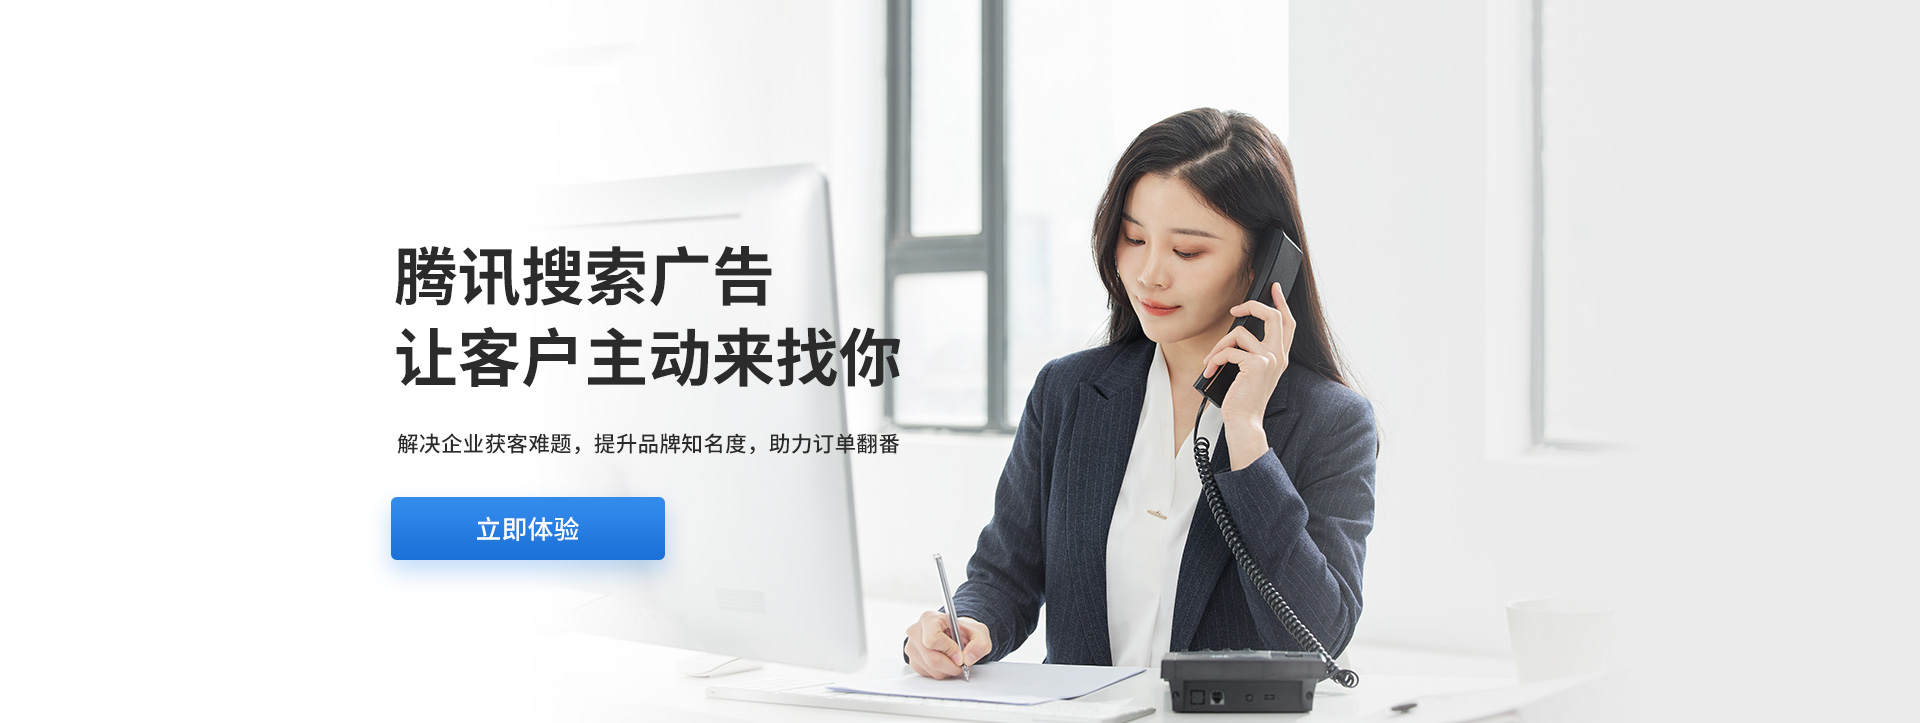 深圳云盟互动网络技术有限公司